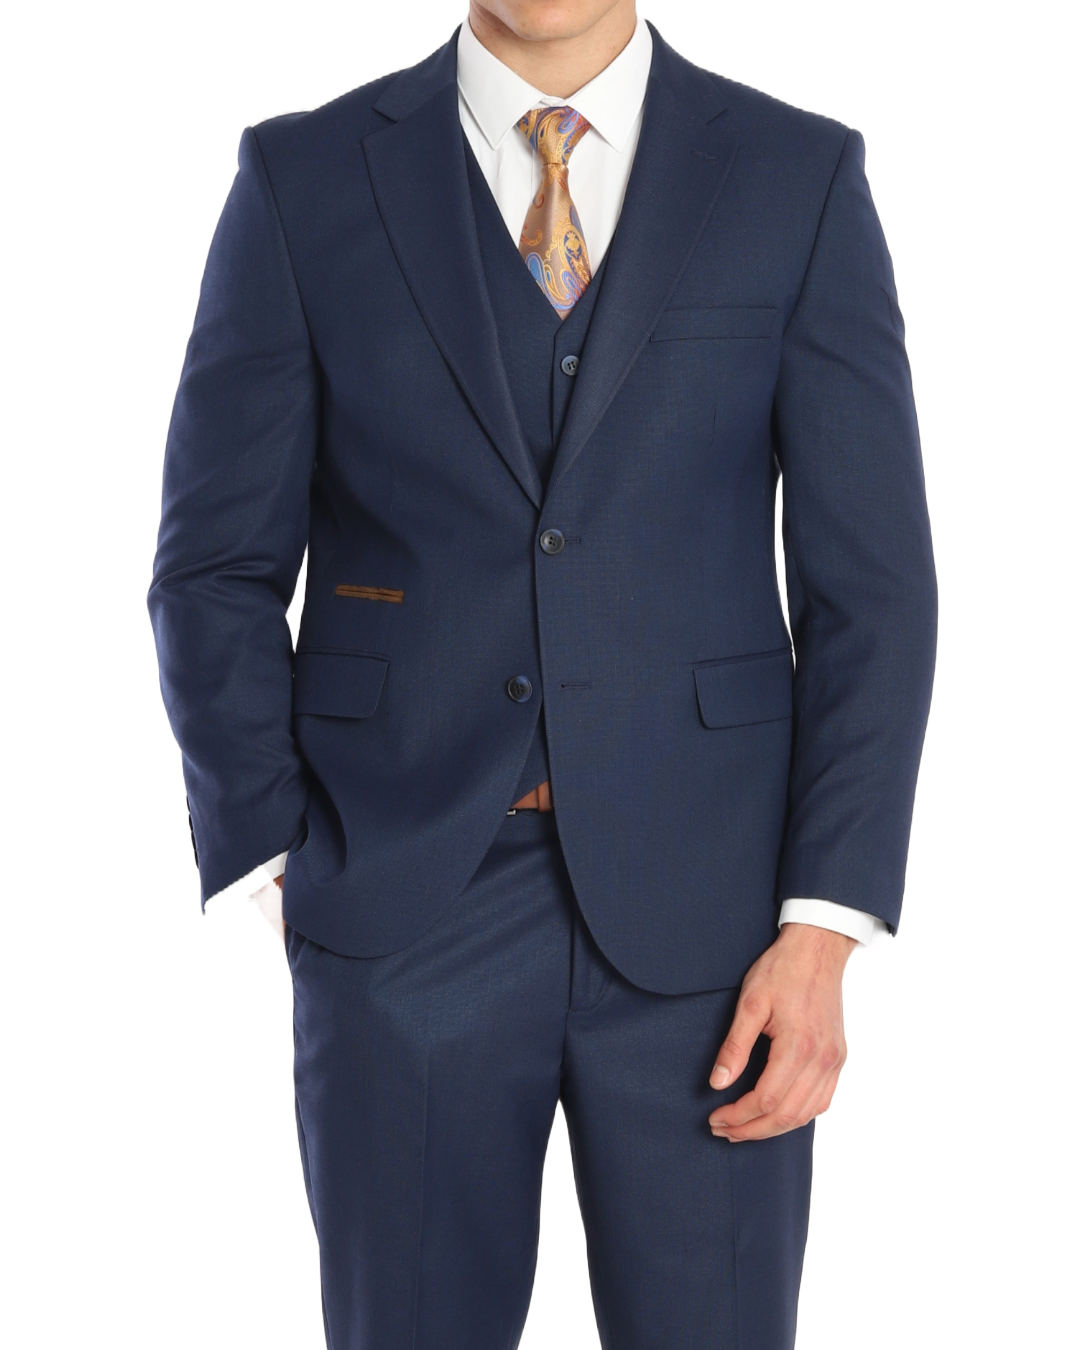 BARRON ARISTOCRAT II - Navy Plain Three Piece Suit